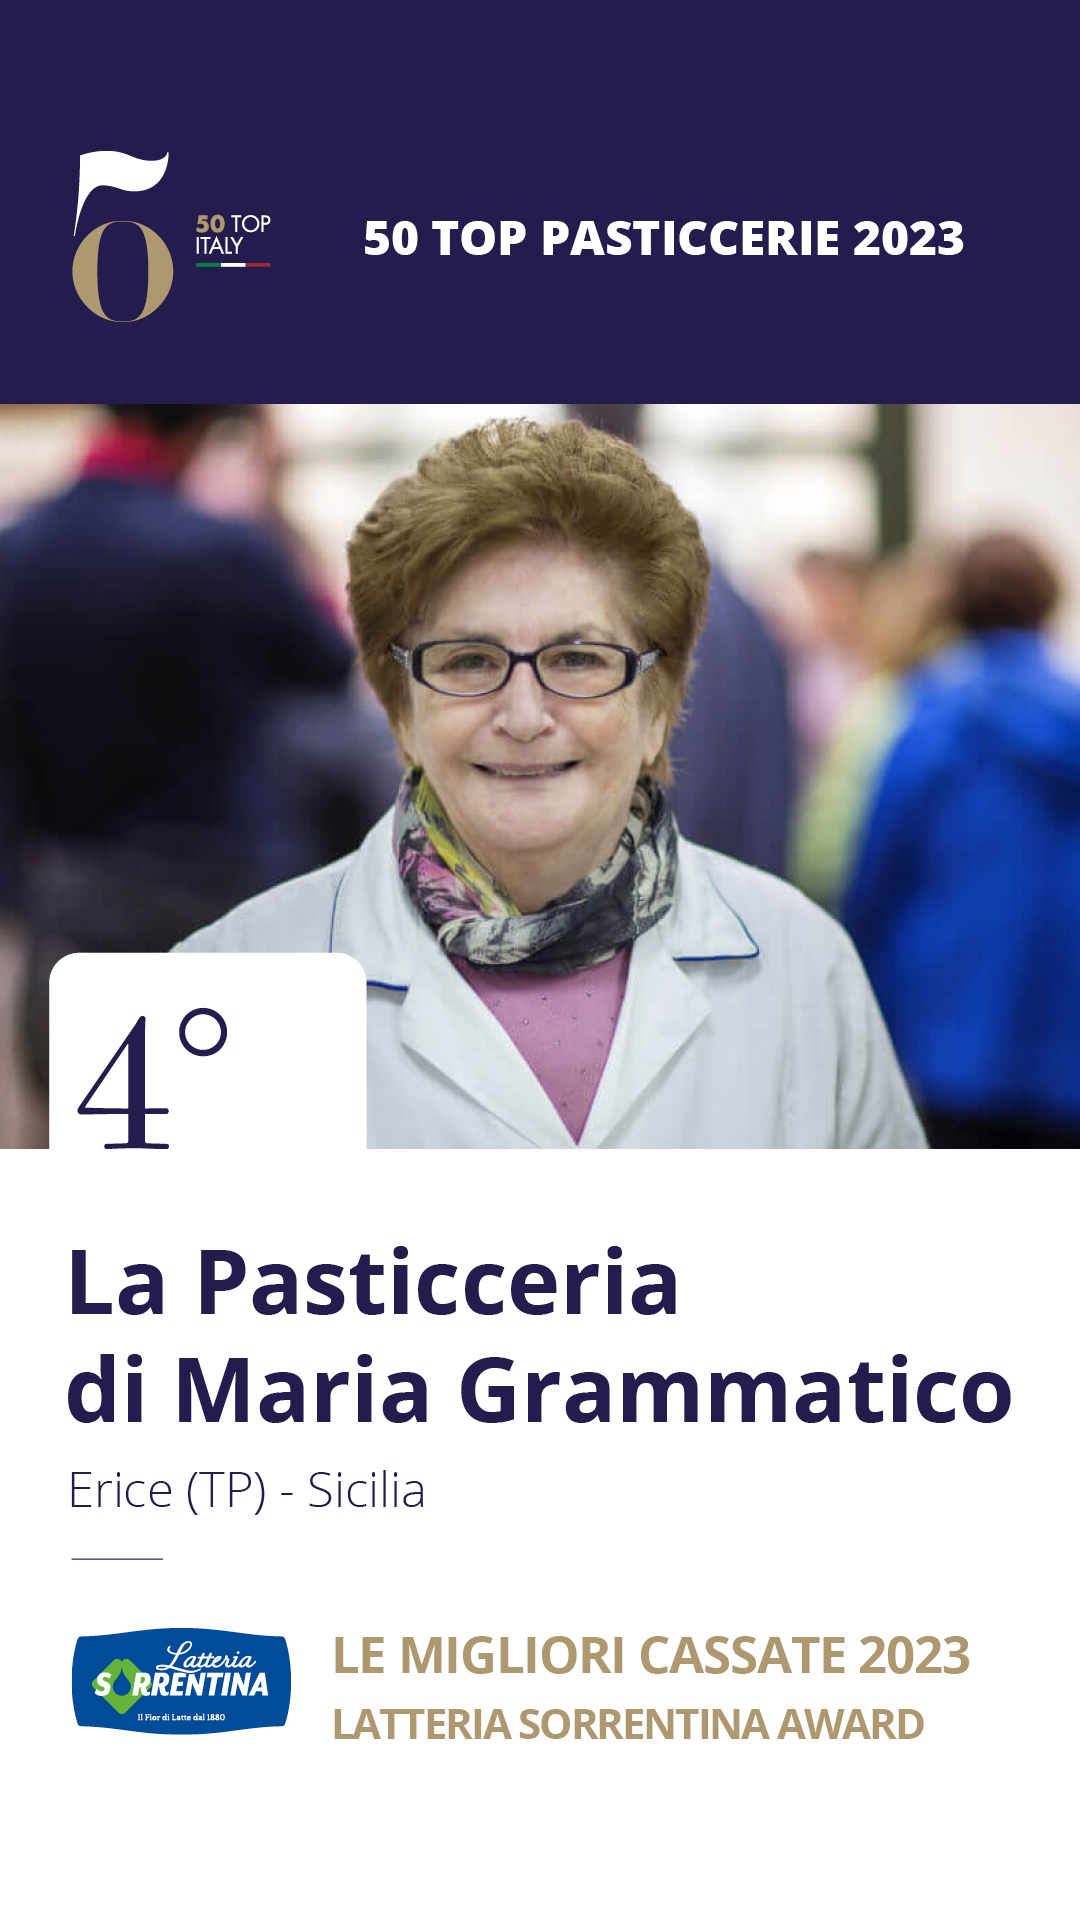 4 - La Pasticceria di Maria Grammatico - Erice (TP), Sicilia